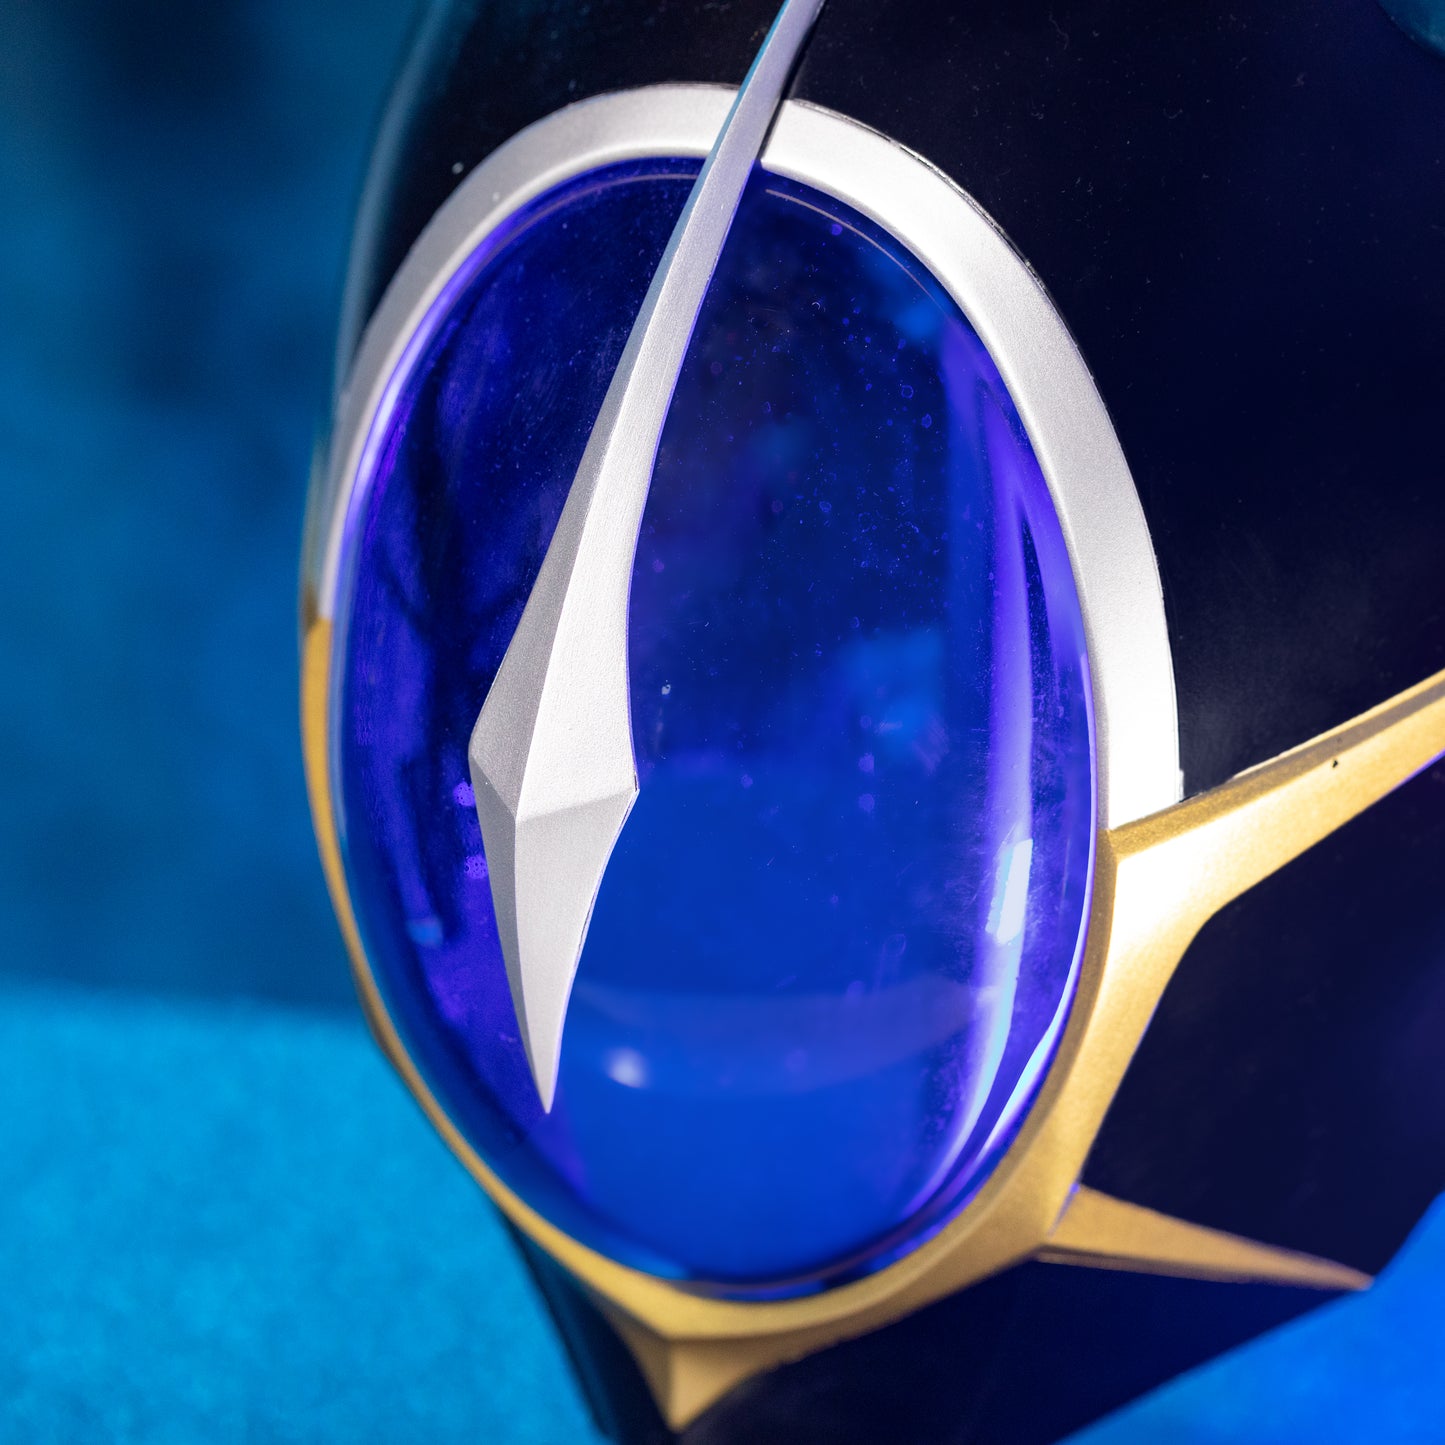 【Neu eingetroffen】Xcoser Code Geass Maske Cosplay Helm – Lelouch Zero Vollmaßstab 1:1 Replik Halloween Anime Sammlerstücke Requisiten